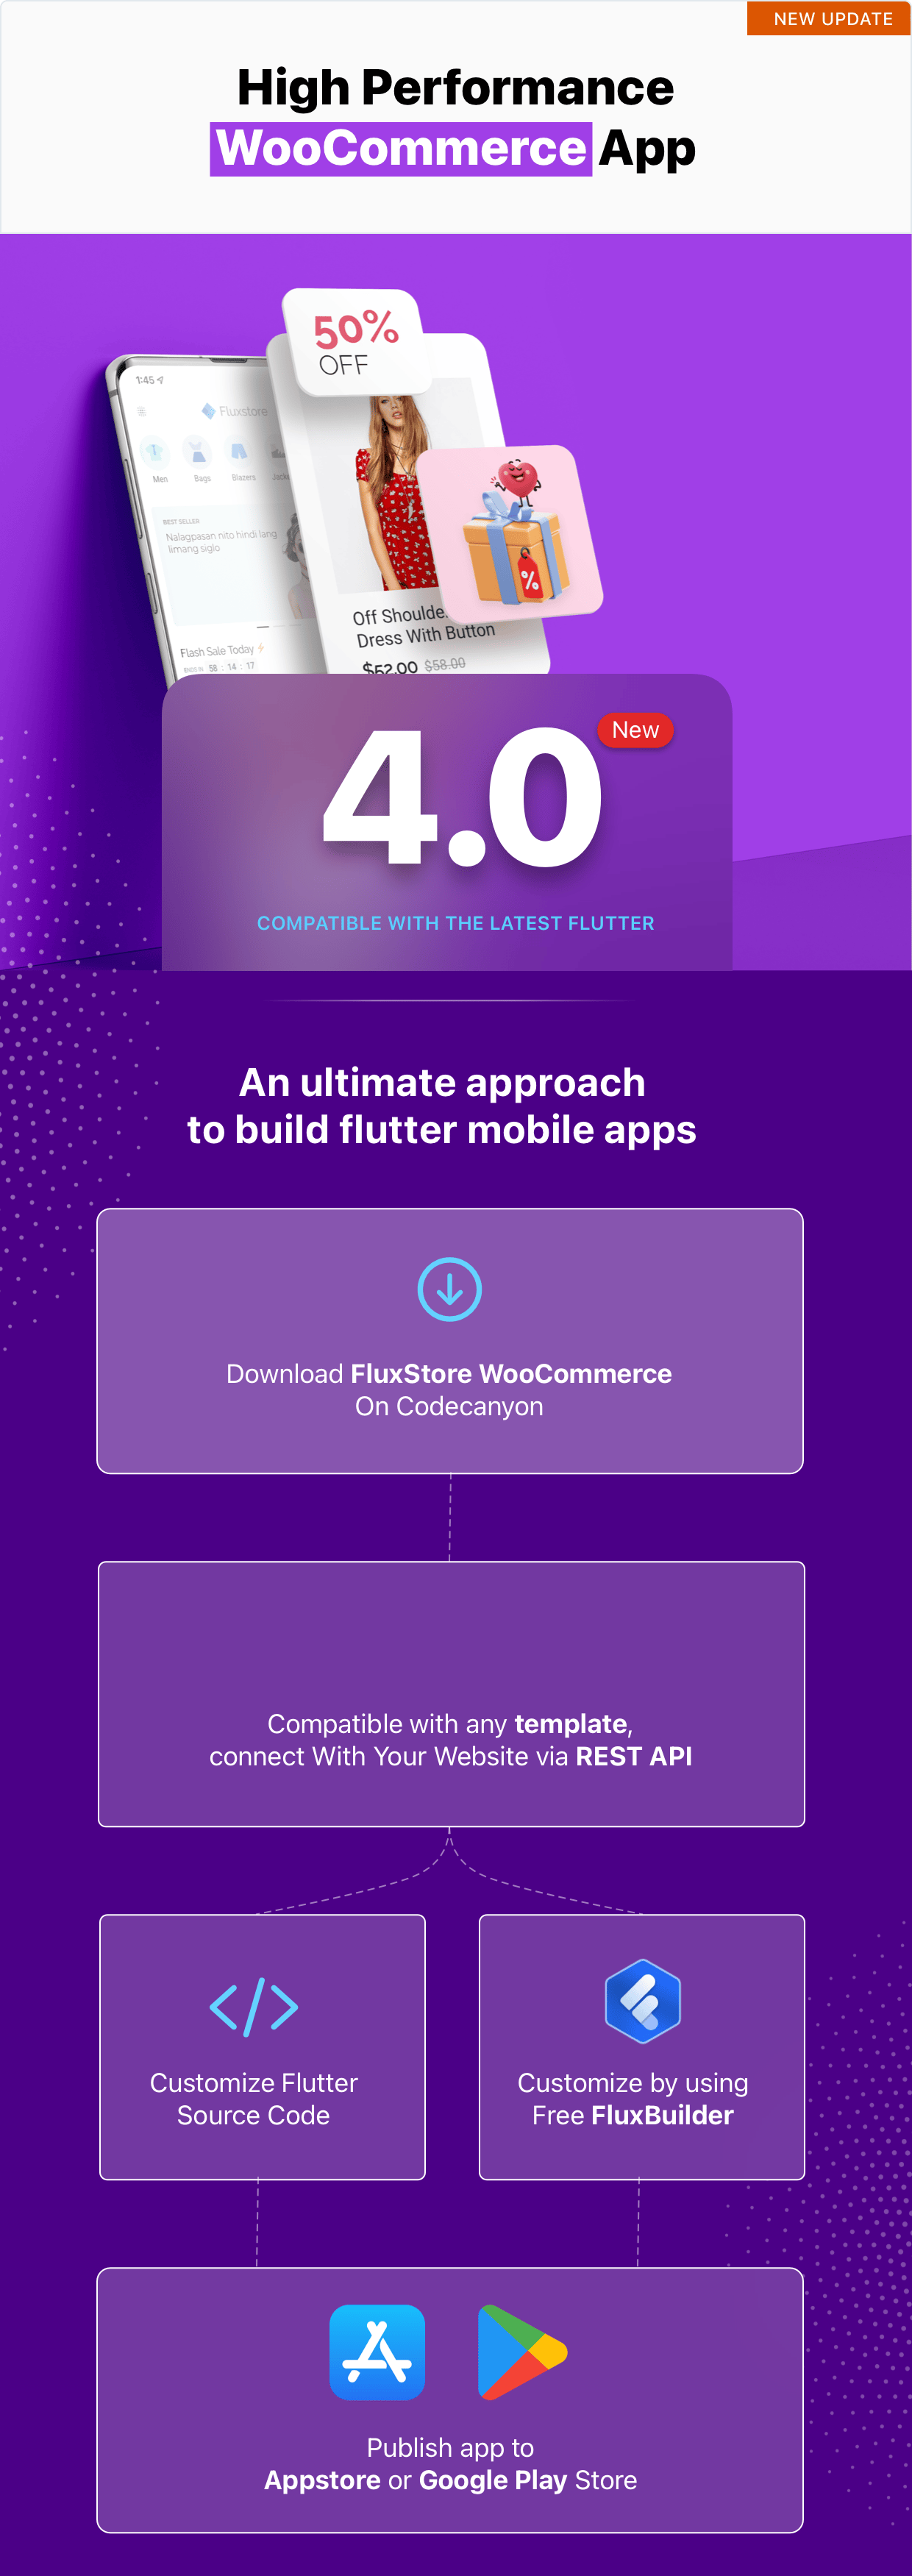 Fluxstore WooCommerce - Flutter E-commerce Full App - 3